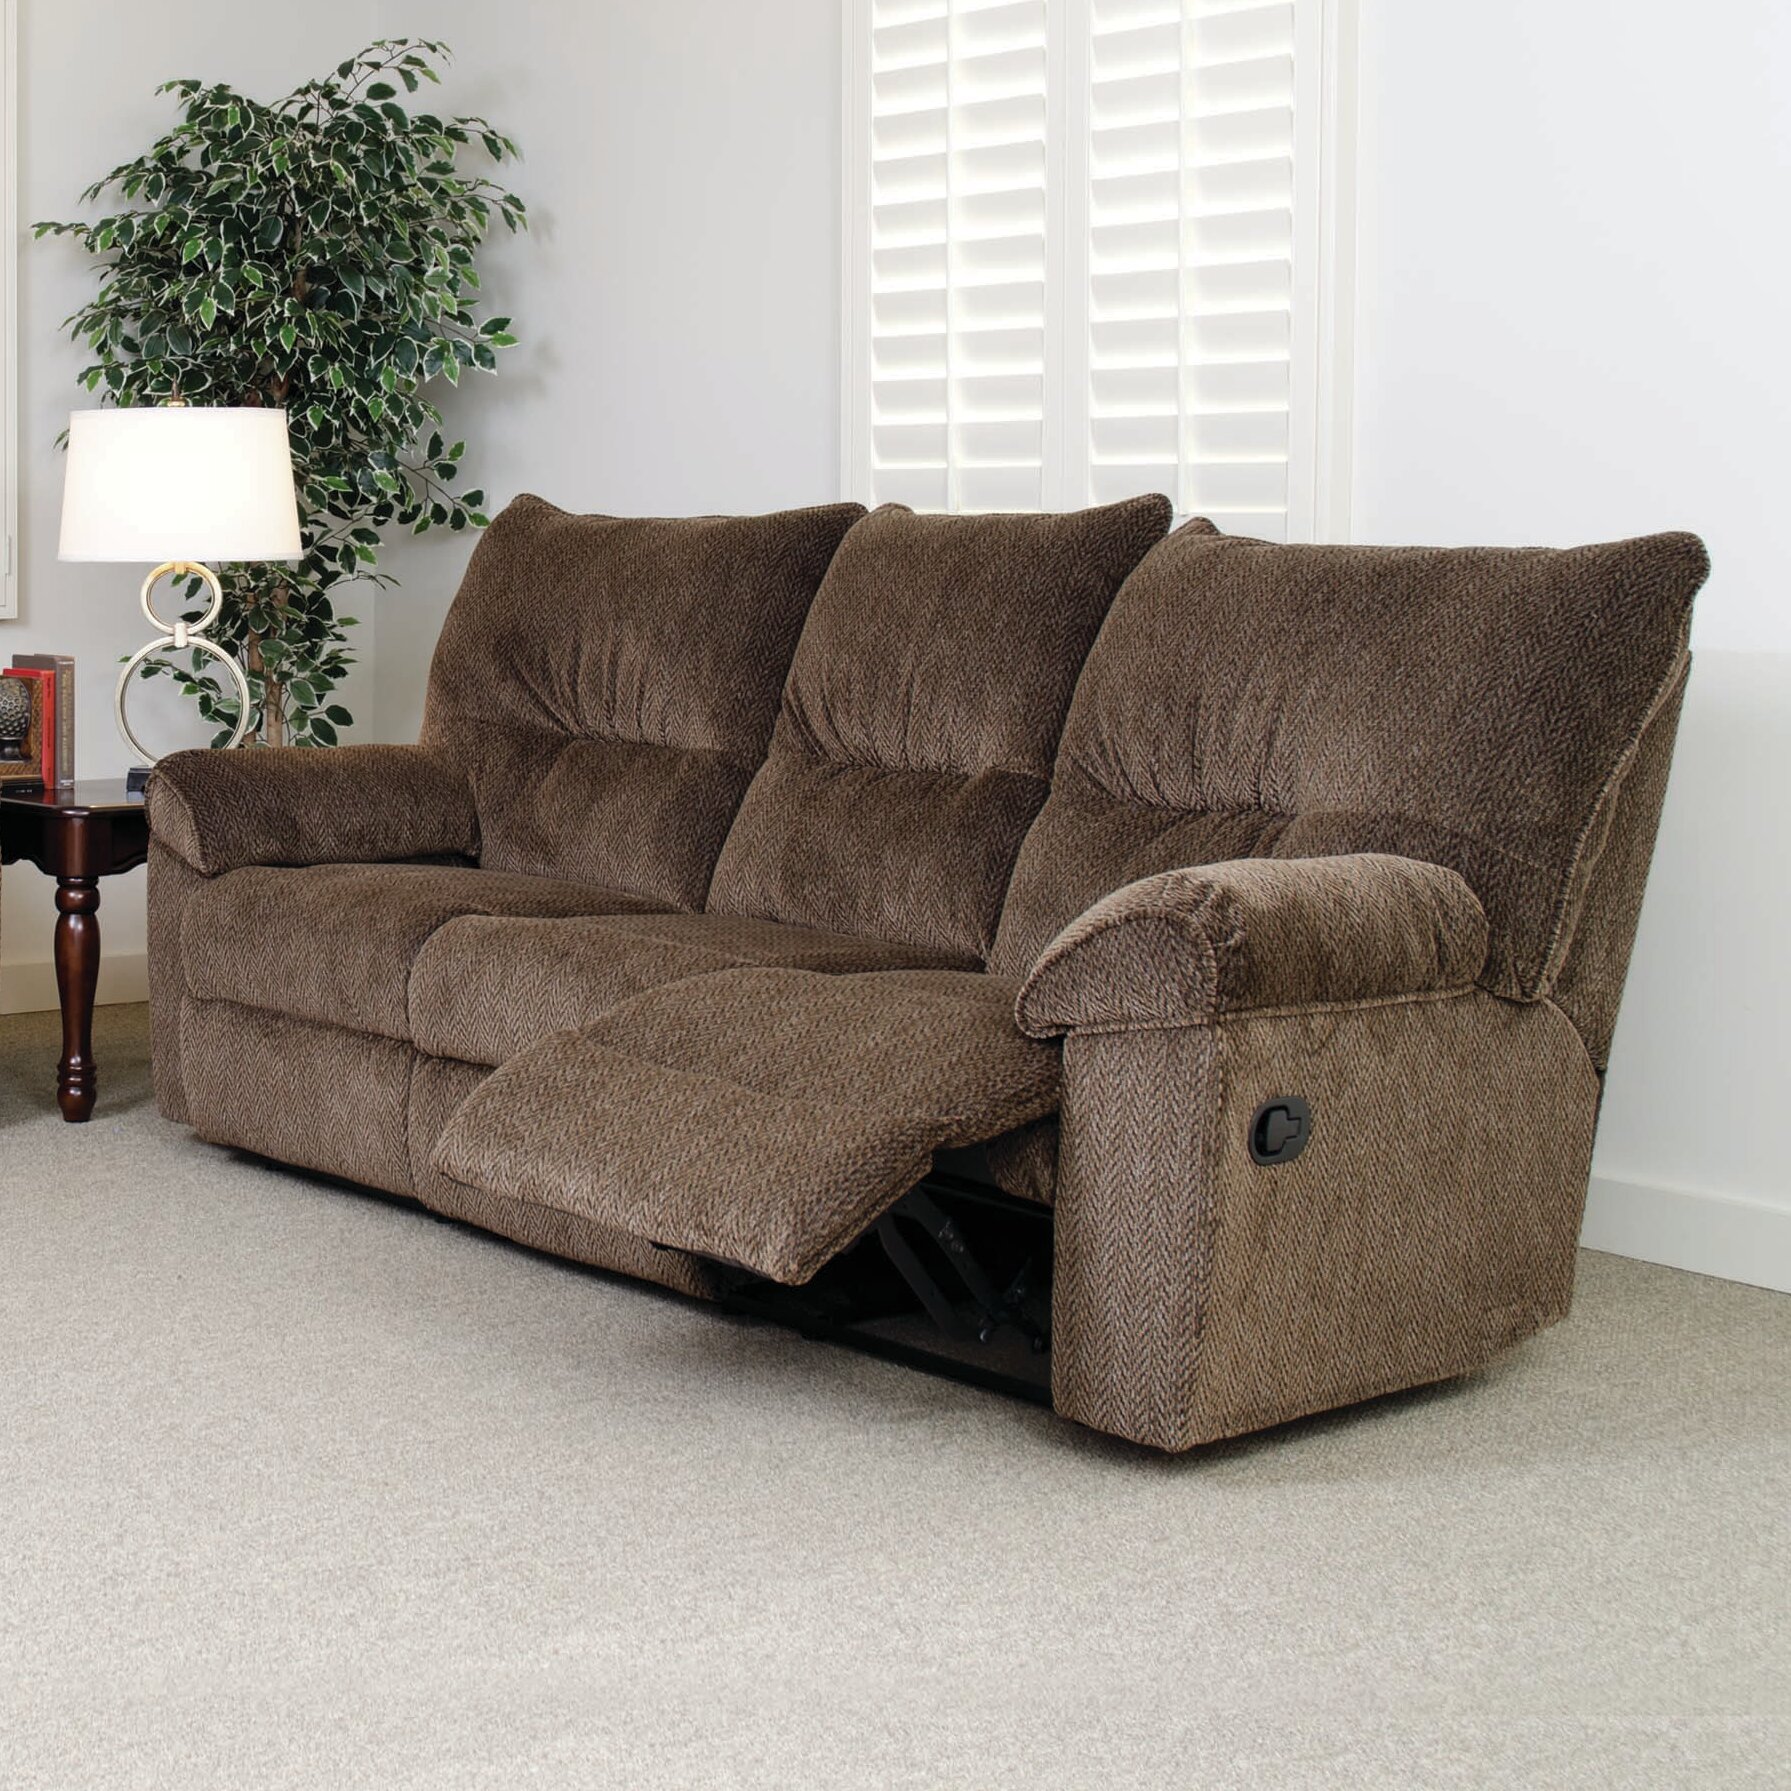 Serta Upholstery Double Reclining Sofa 